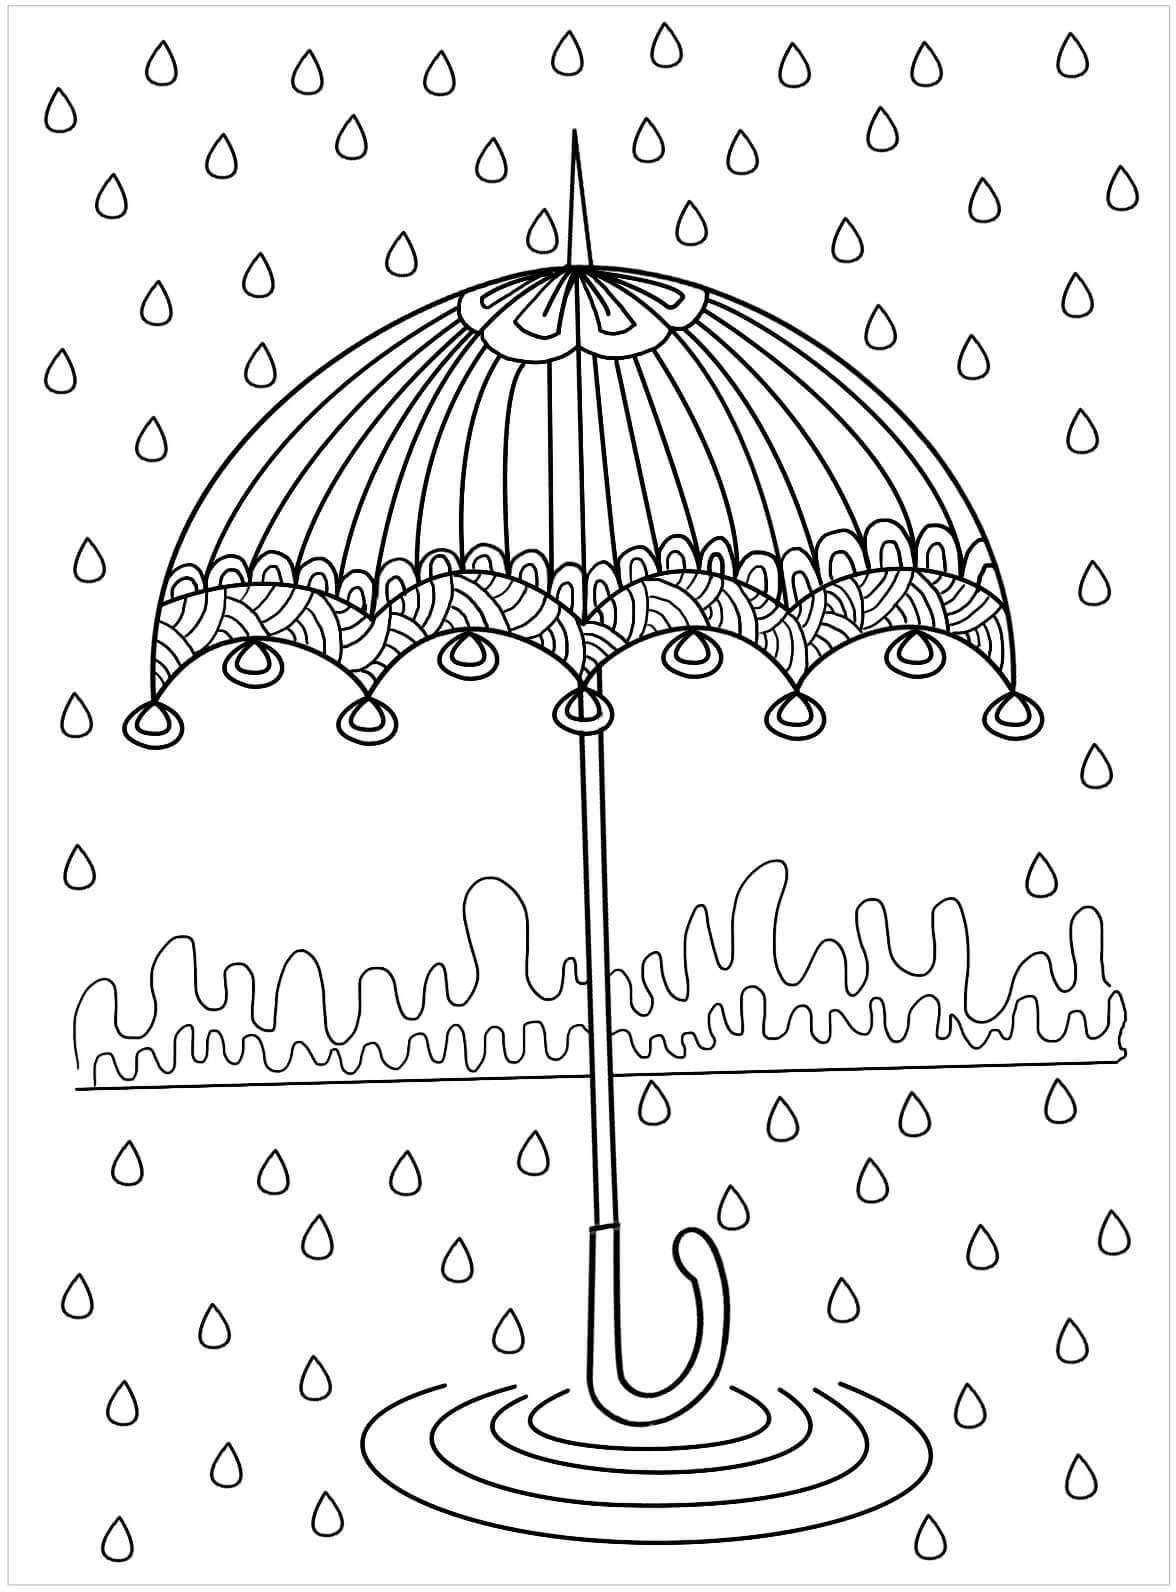 Deštník je pro dospělé omalovánka